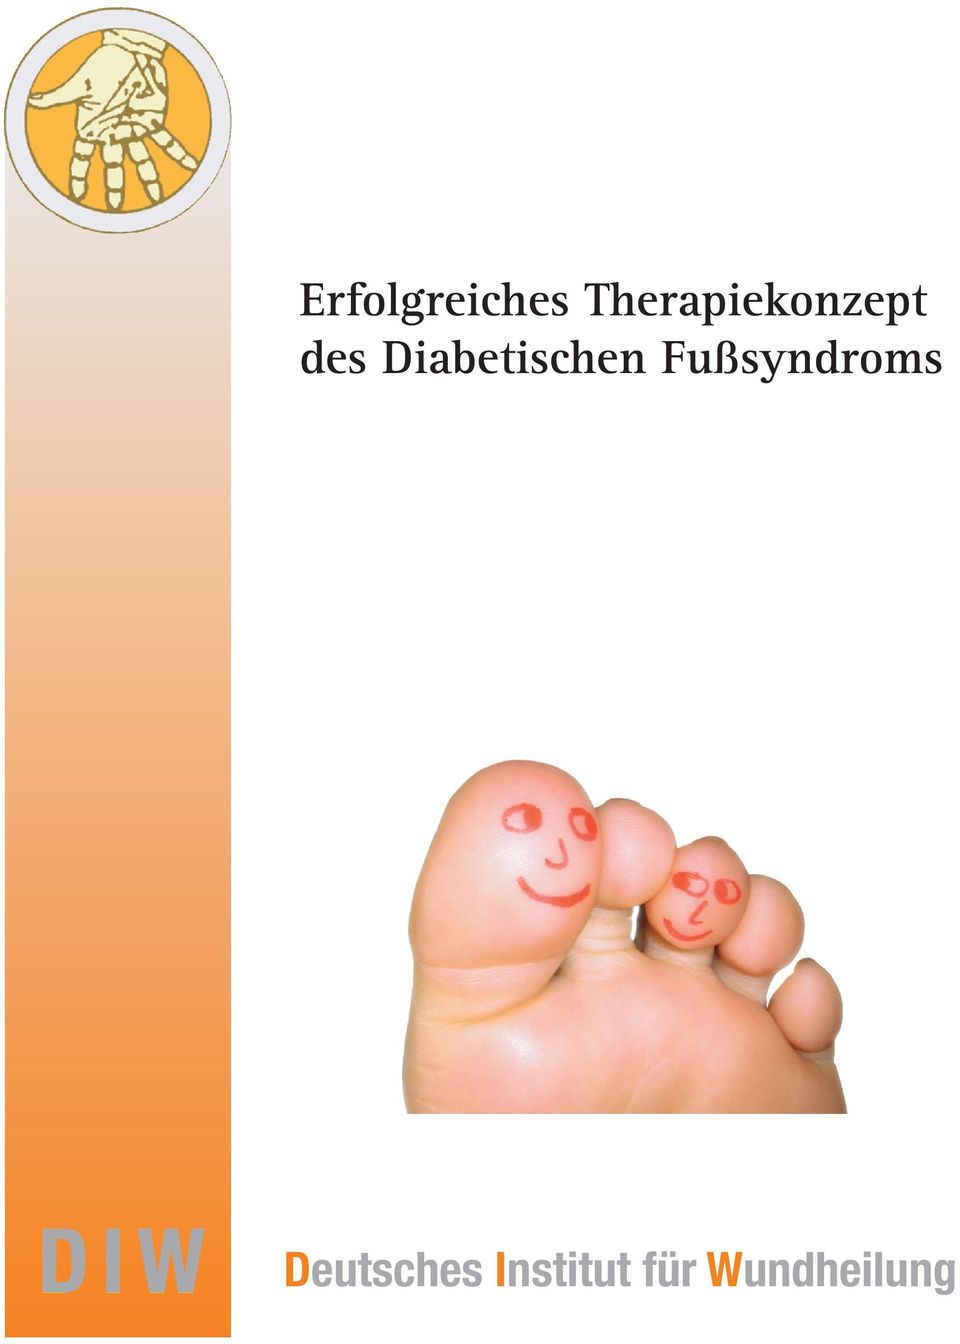 Diabetischen Fußsyndroms